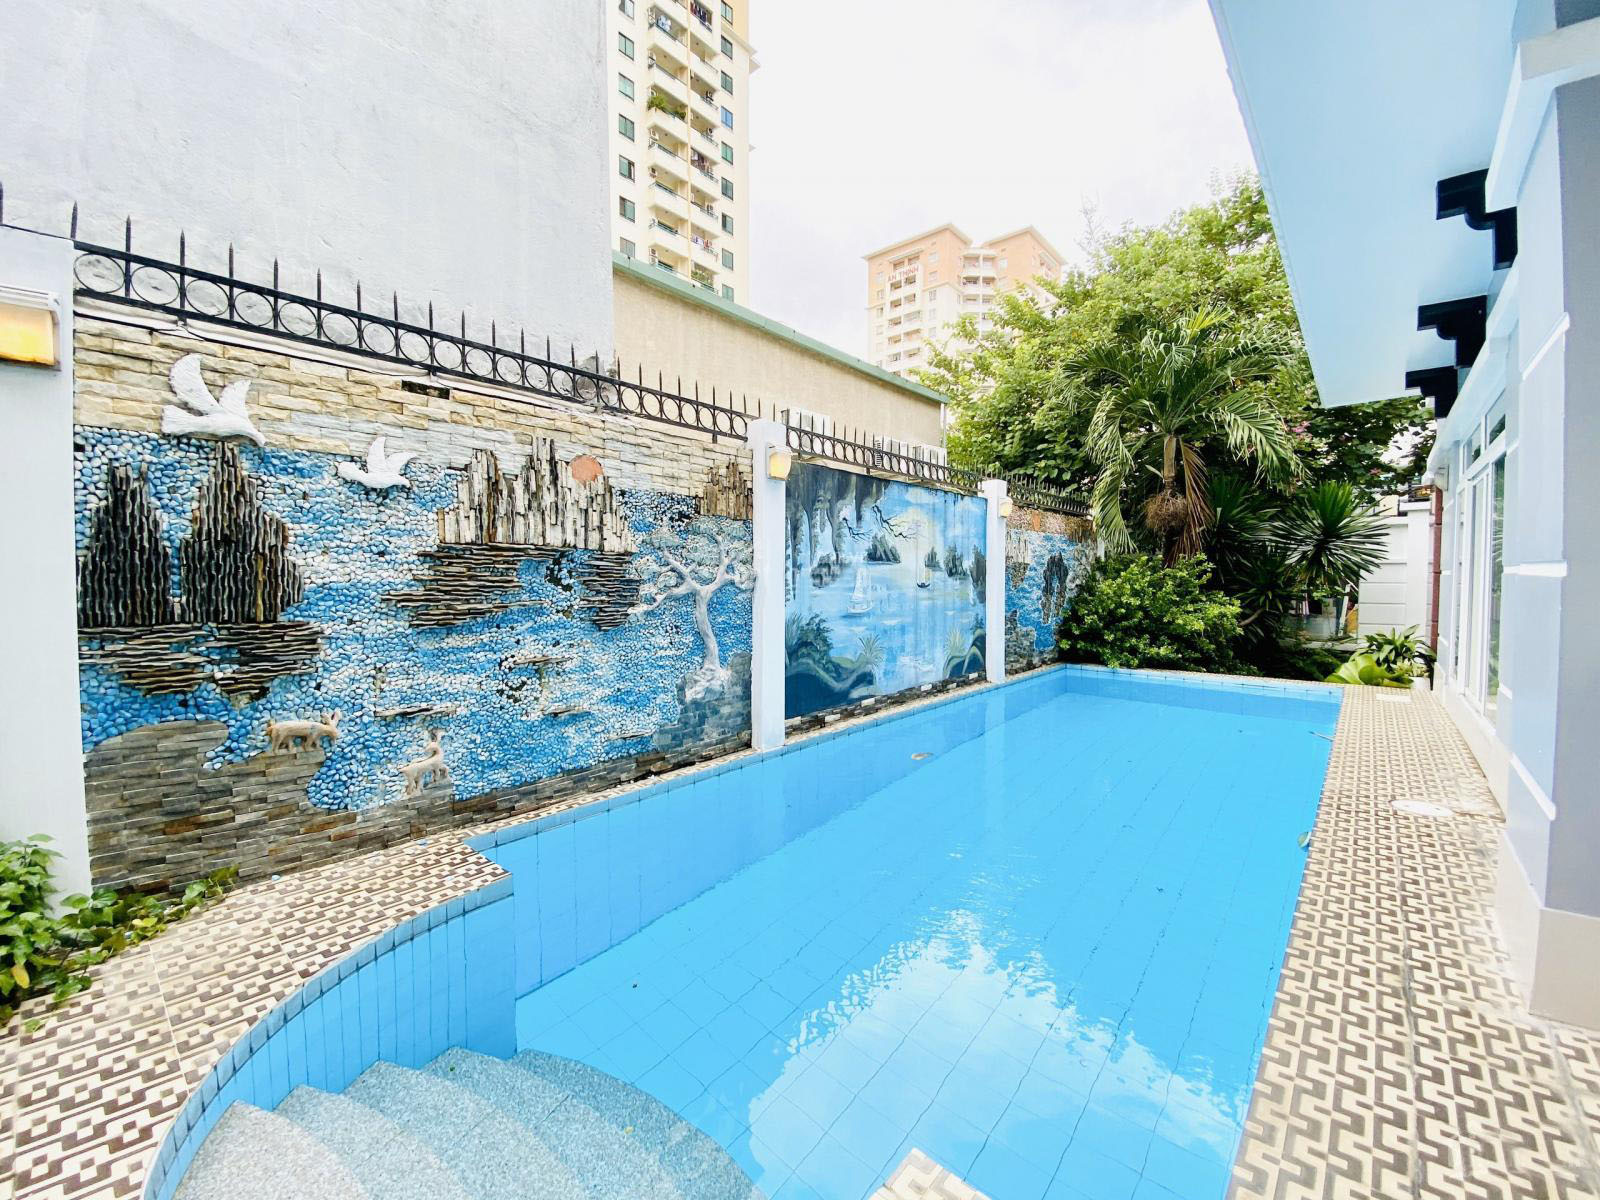   	Cho thuê Biệt thự hiện đại có hồ bơi  Thái Thuận An Phú Quận 2 MS:506